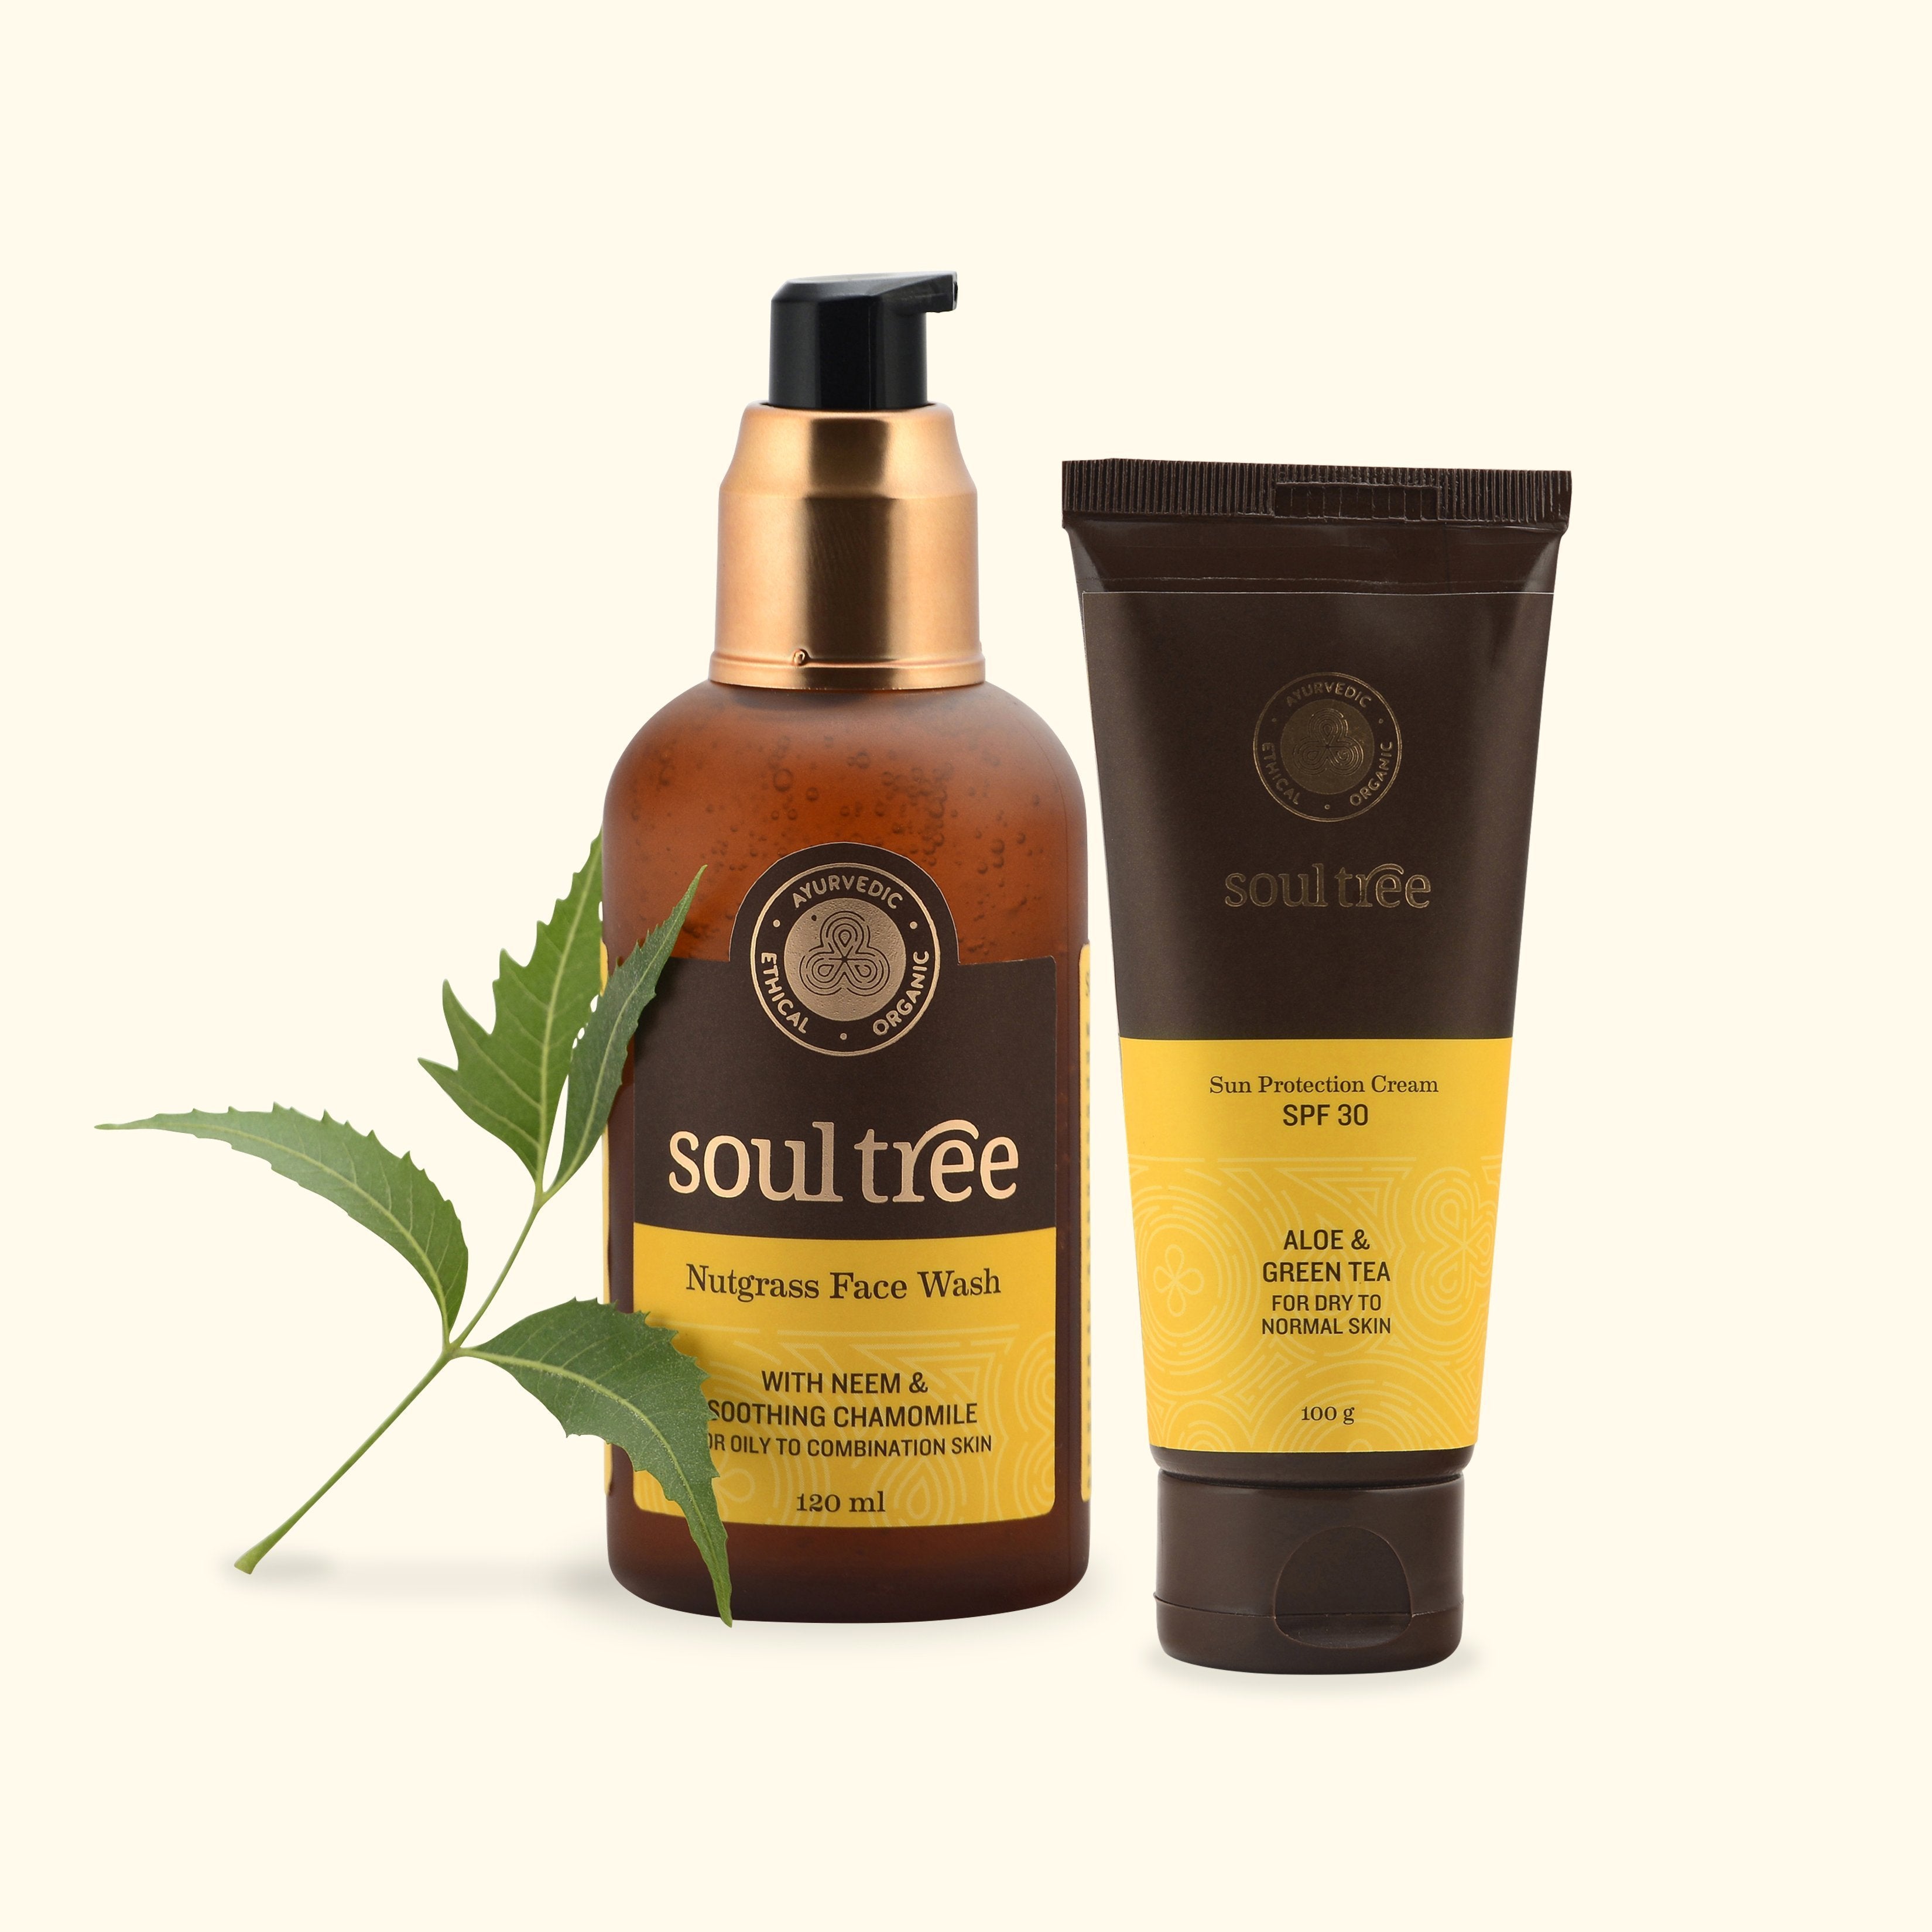 Nutgrass Face Wash & Sun Protection Cream SPF 30 Set